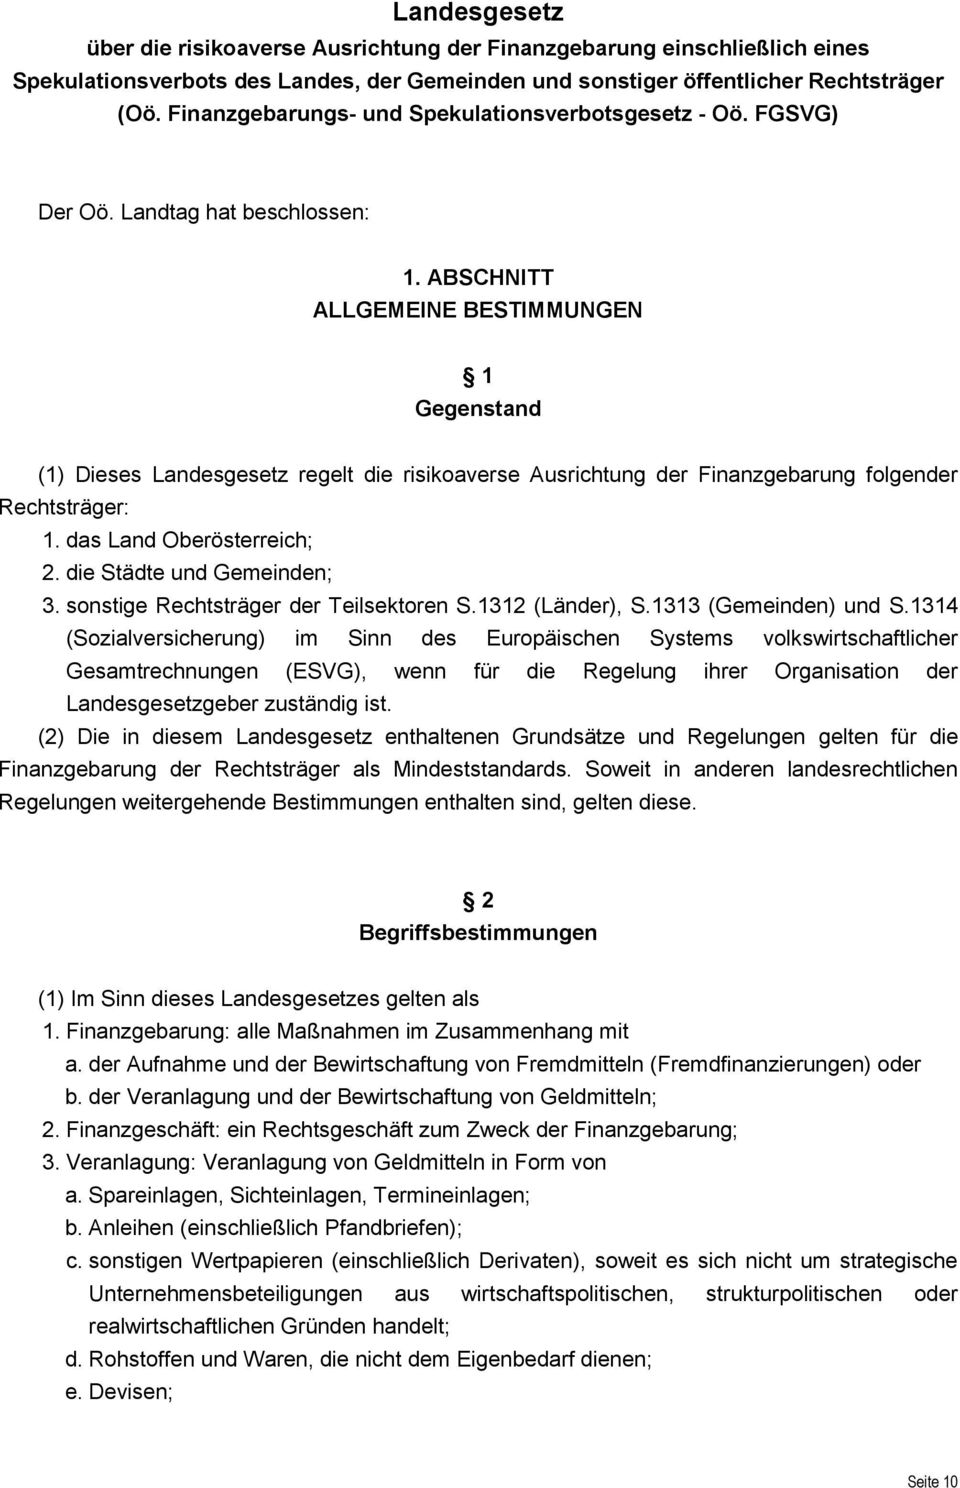 ABSCHNITT ALLGEMEINE BESTIMMUNGEN 1 Gegenstand (1) Dieses Landesgesetz regelt die risikoaverse Ausrichtung der Finanzgebarung folgender Rechtsträger: 1. das Land Oberösterreich; 2.